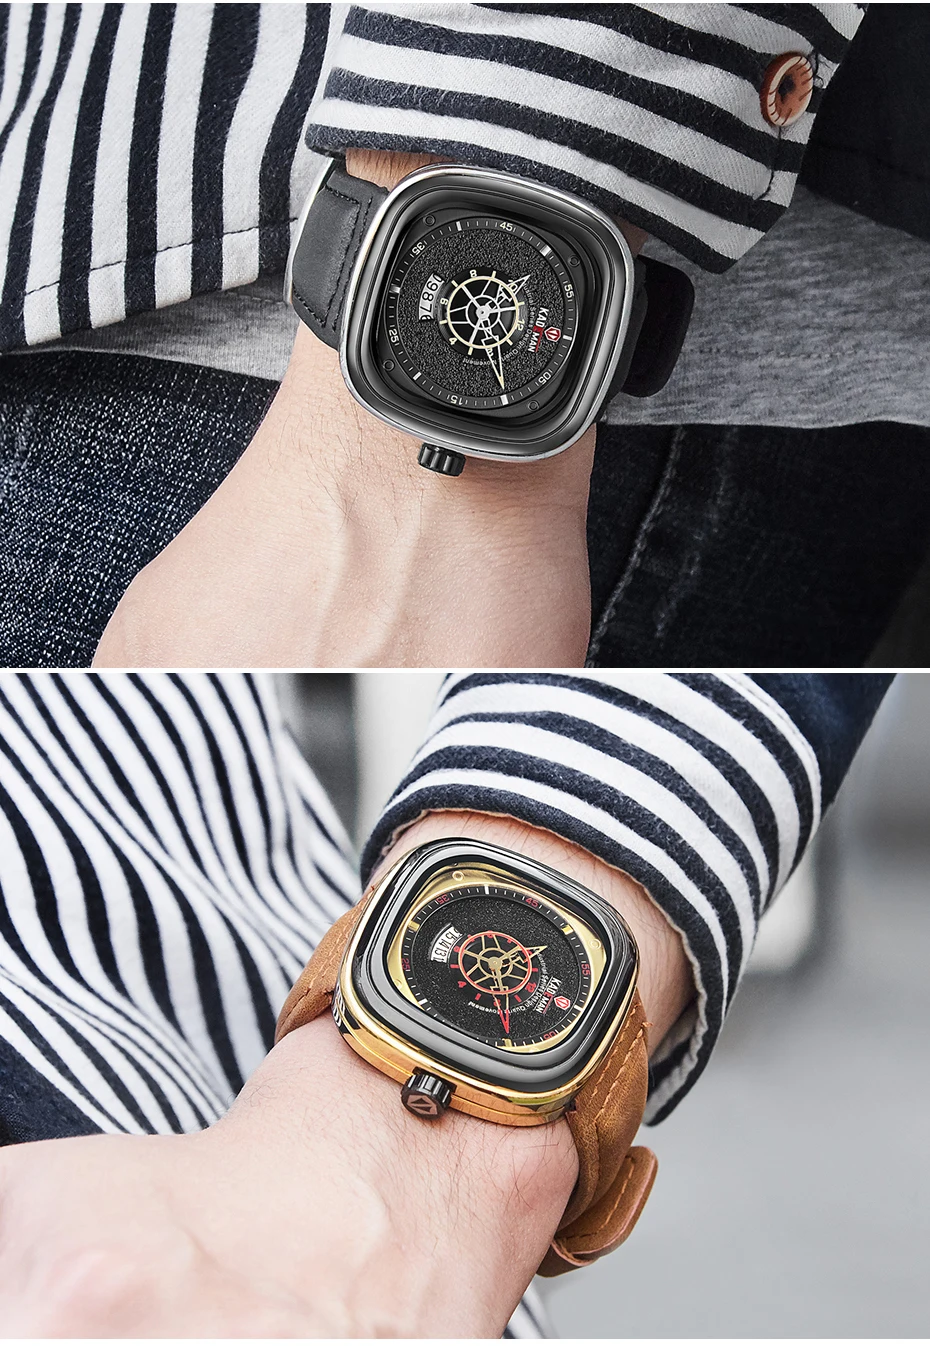 KADEMAN Новые квадратные часы мужские Роскошные спортивные часы Звездный дизайн модные наручные часы 3TAM Бизнес повседневные Relogio Masculino